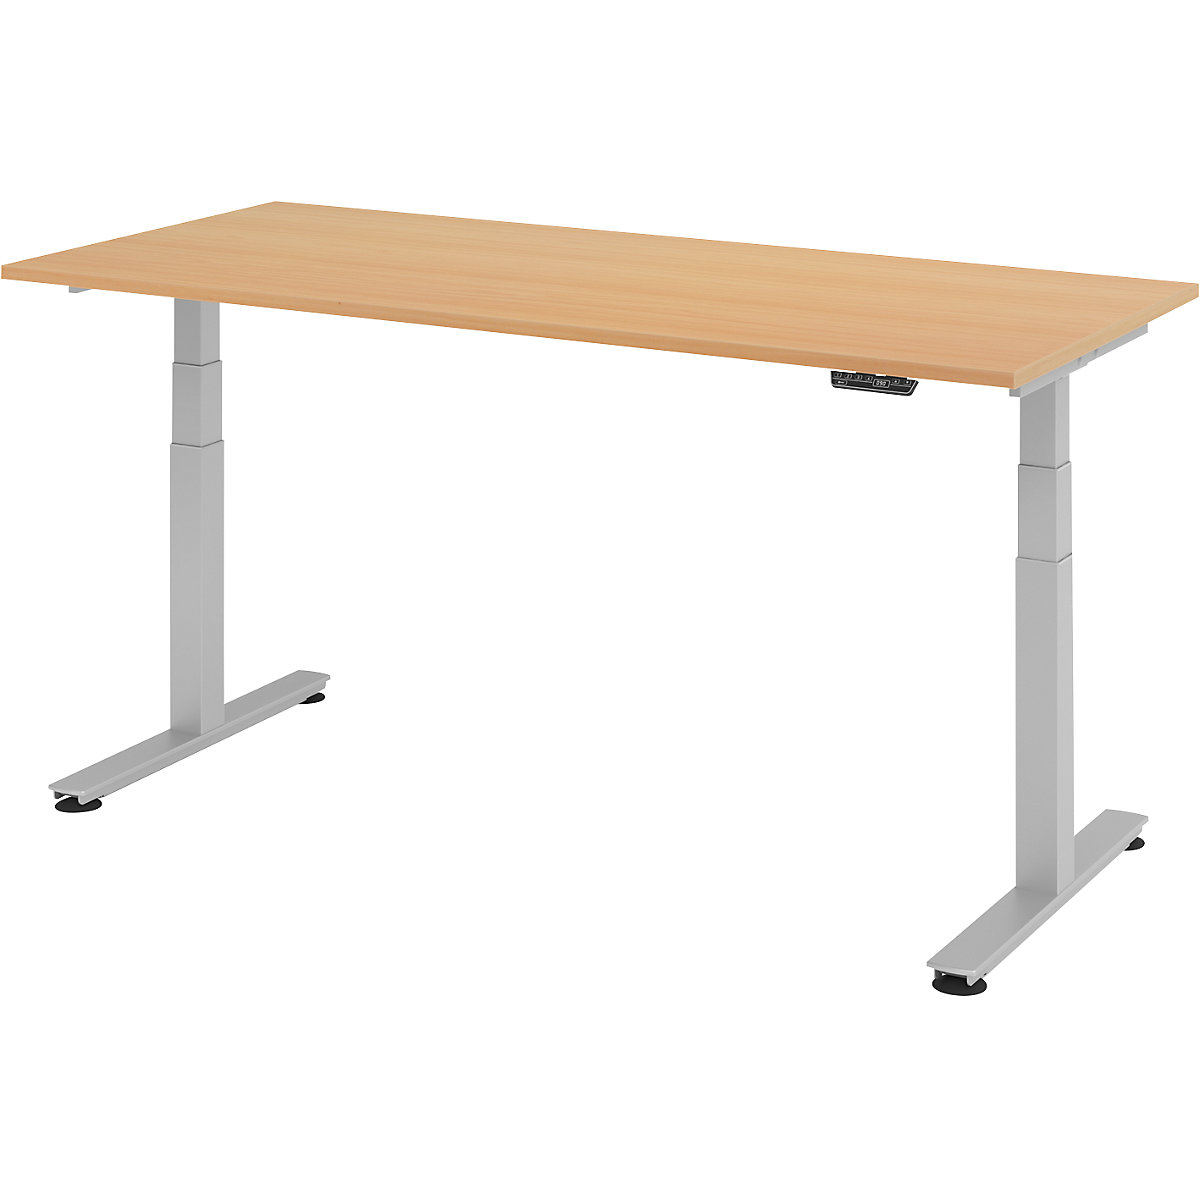 Stôl na písanie v stoji, elektricky výškovo prestaviteľný UPLINER-2.0, podstavec s nohou v tvare T, šírka 1200 mm, vzor buk-20